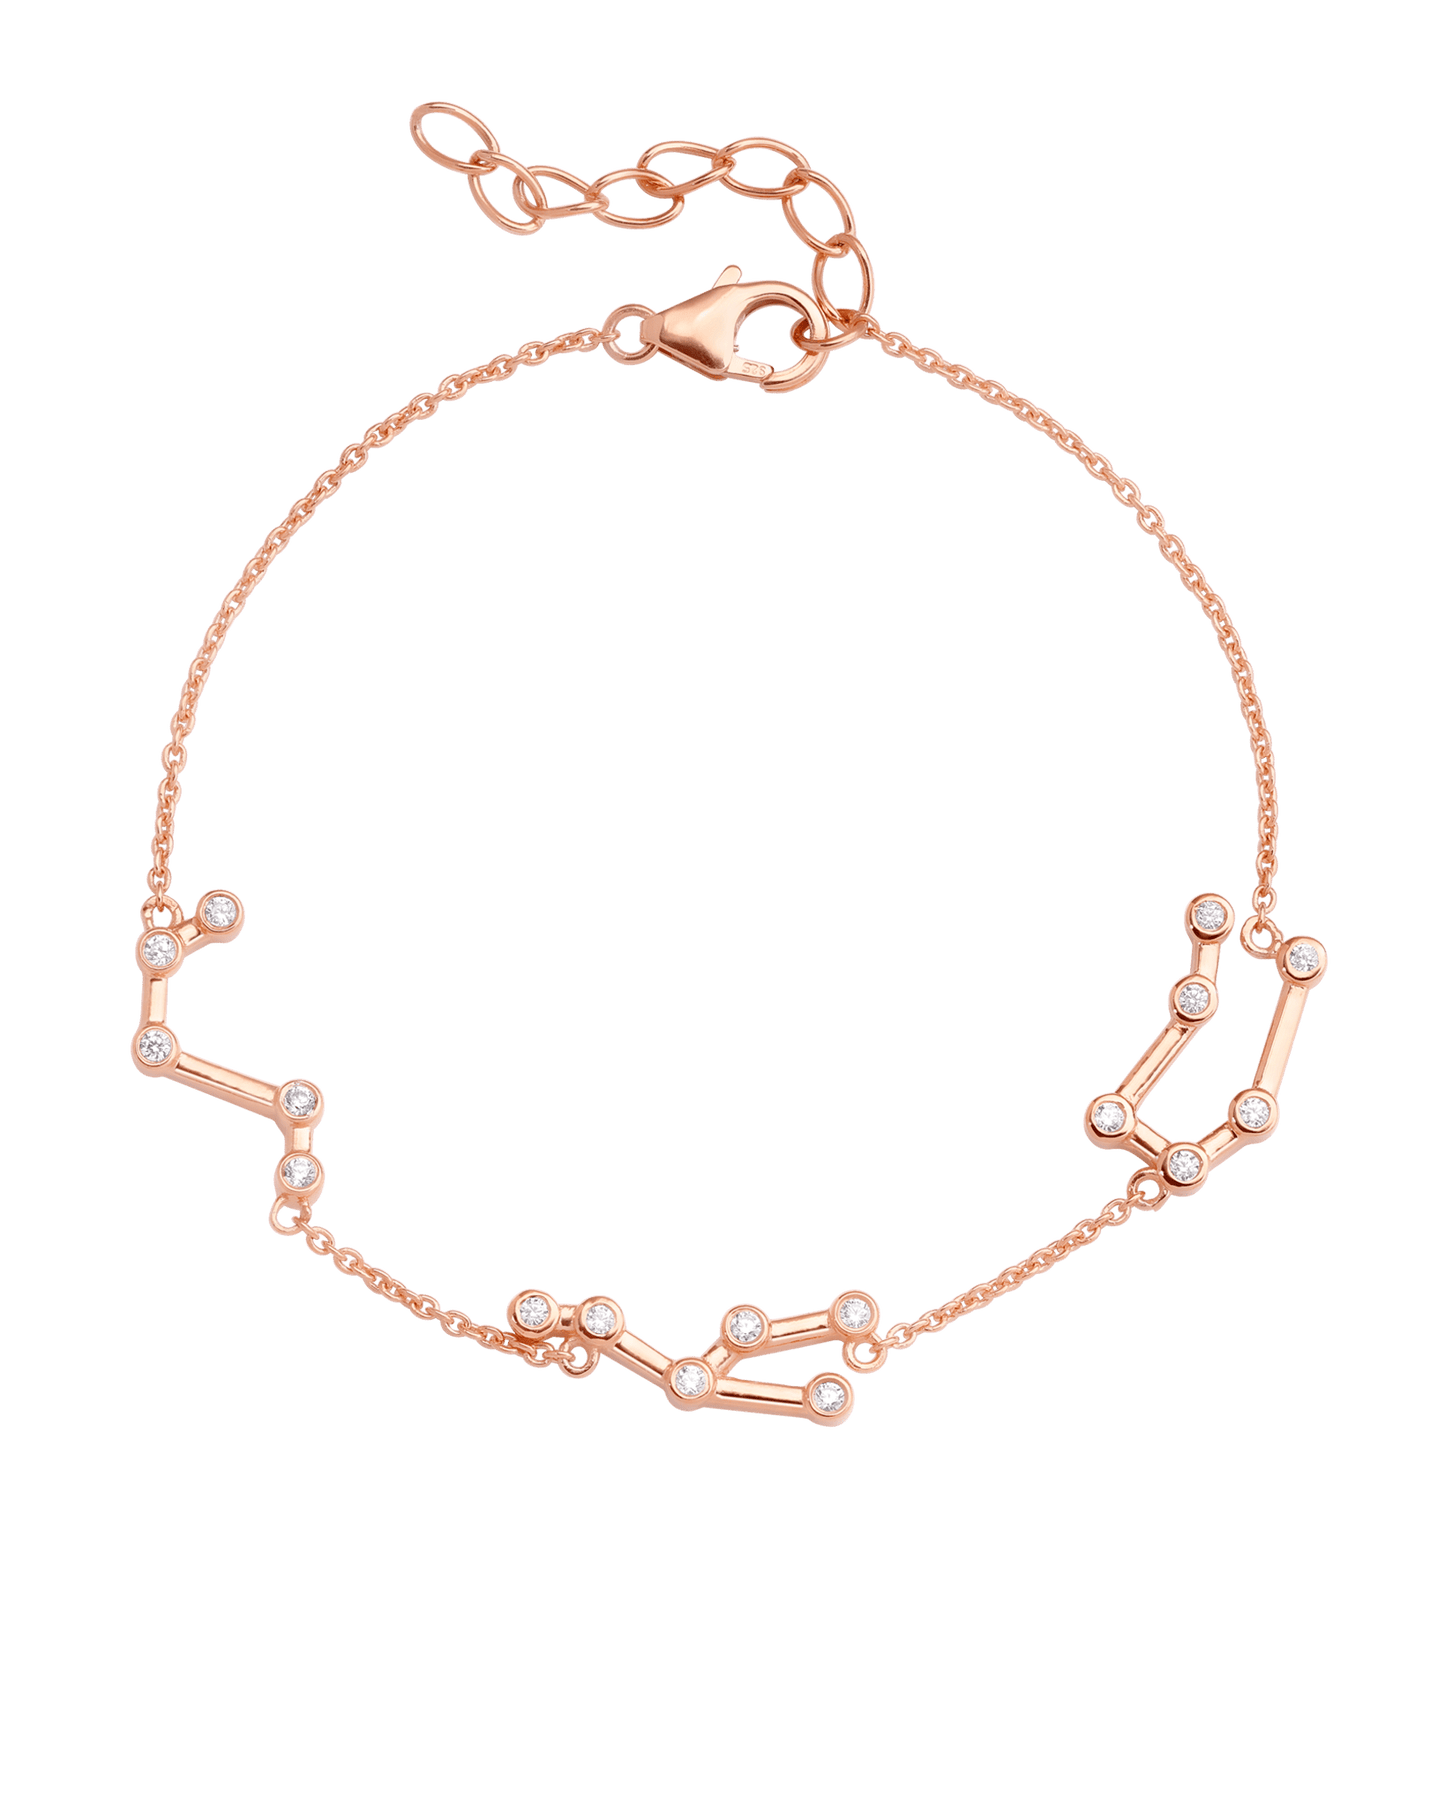 Constellation Bracelet - 18K Gold Vermeil Bracelets magal-dev 